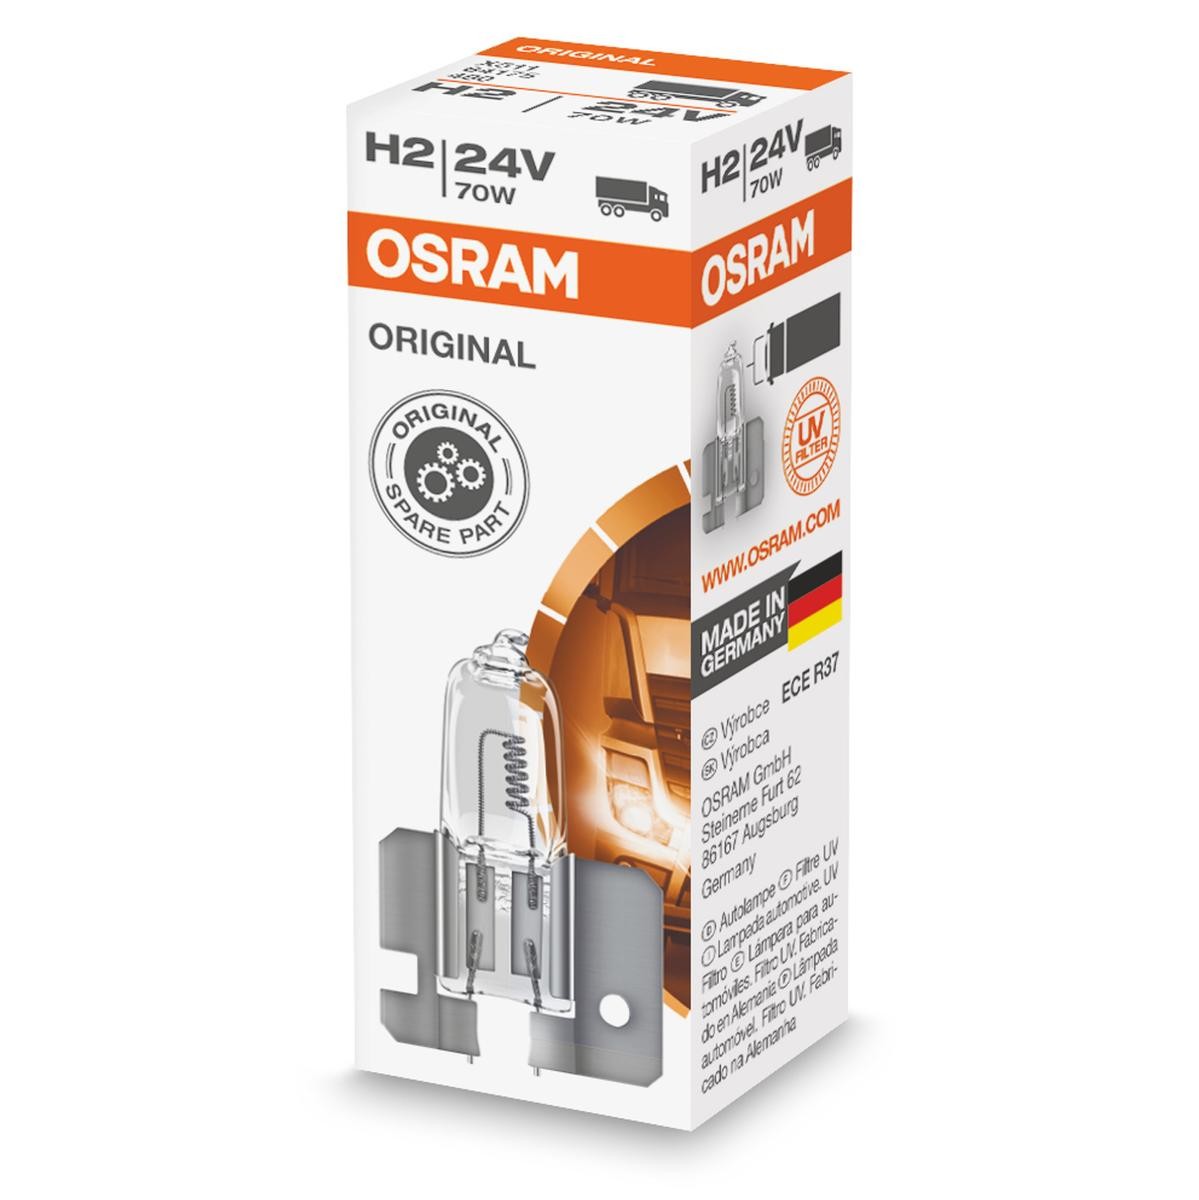 H2 OSRAM ORIGINAL LINE 24V, 70W Bulb, headlight 64175 buy